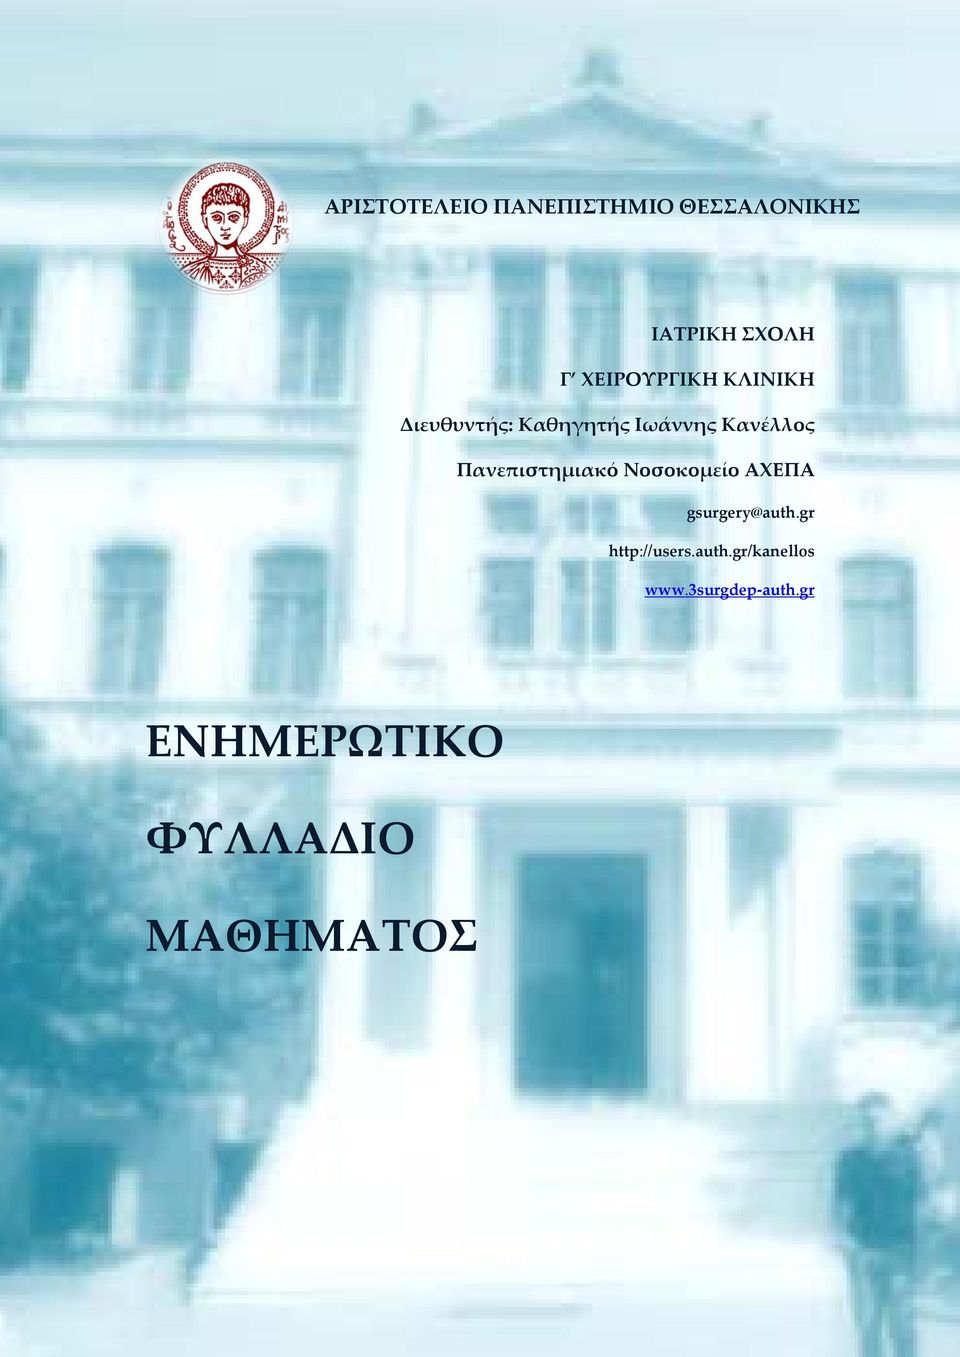 Πανεπιστημιακό Νοσοκομείο ΑΧΕΠΑ gsurgery@auth.gr http://users.